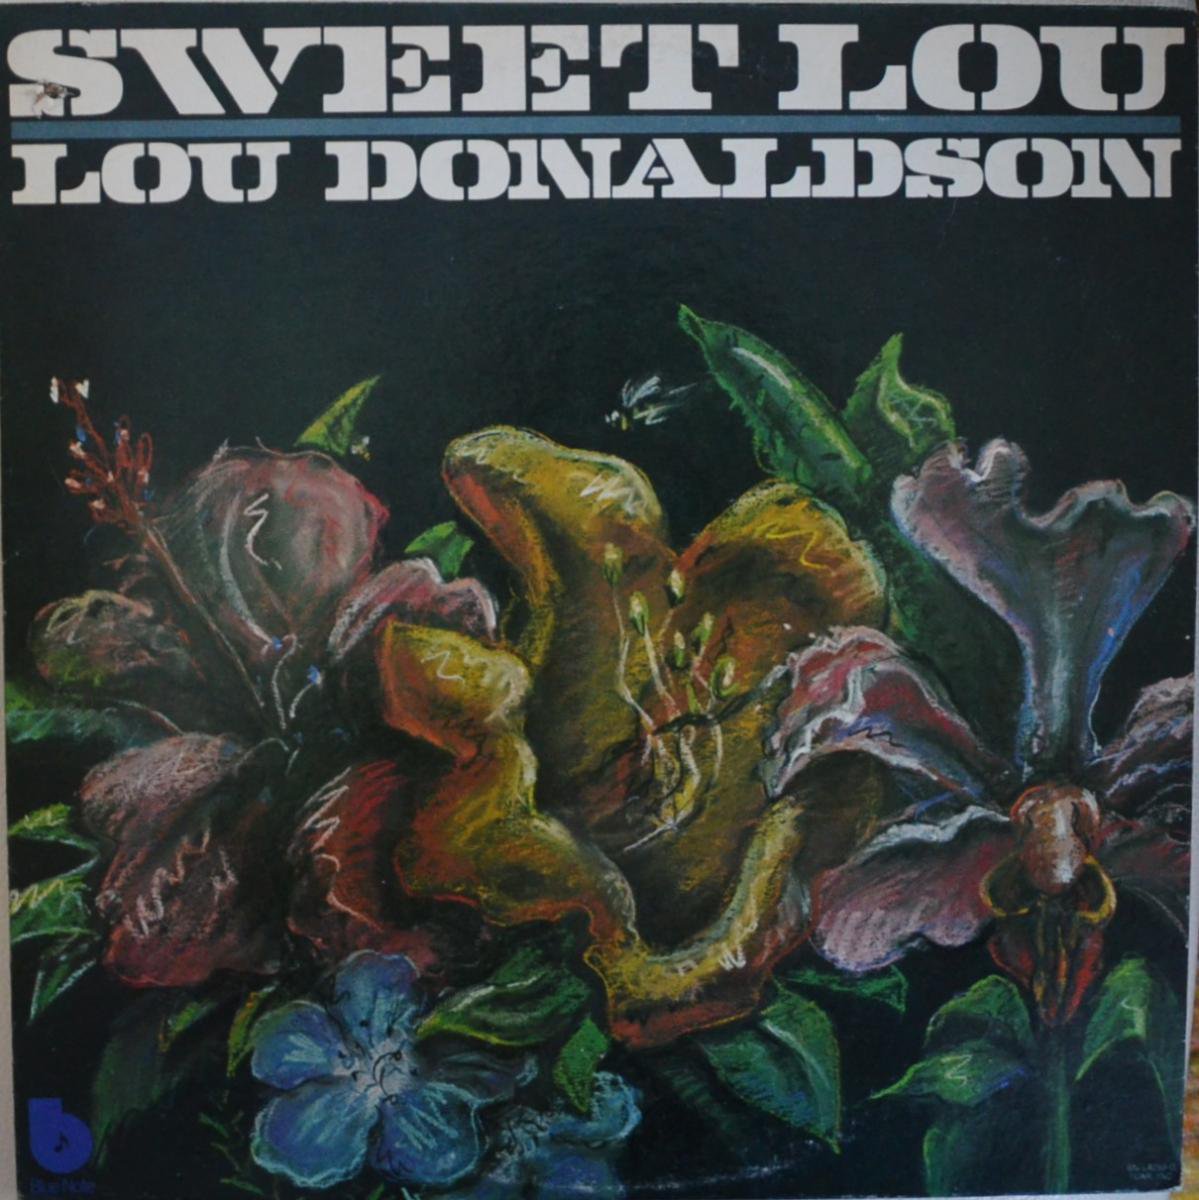 LOU DONALDSON / SWEET LOU (LP)